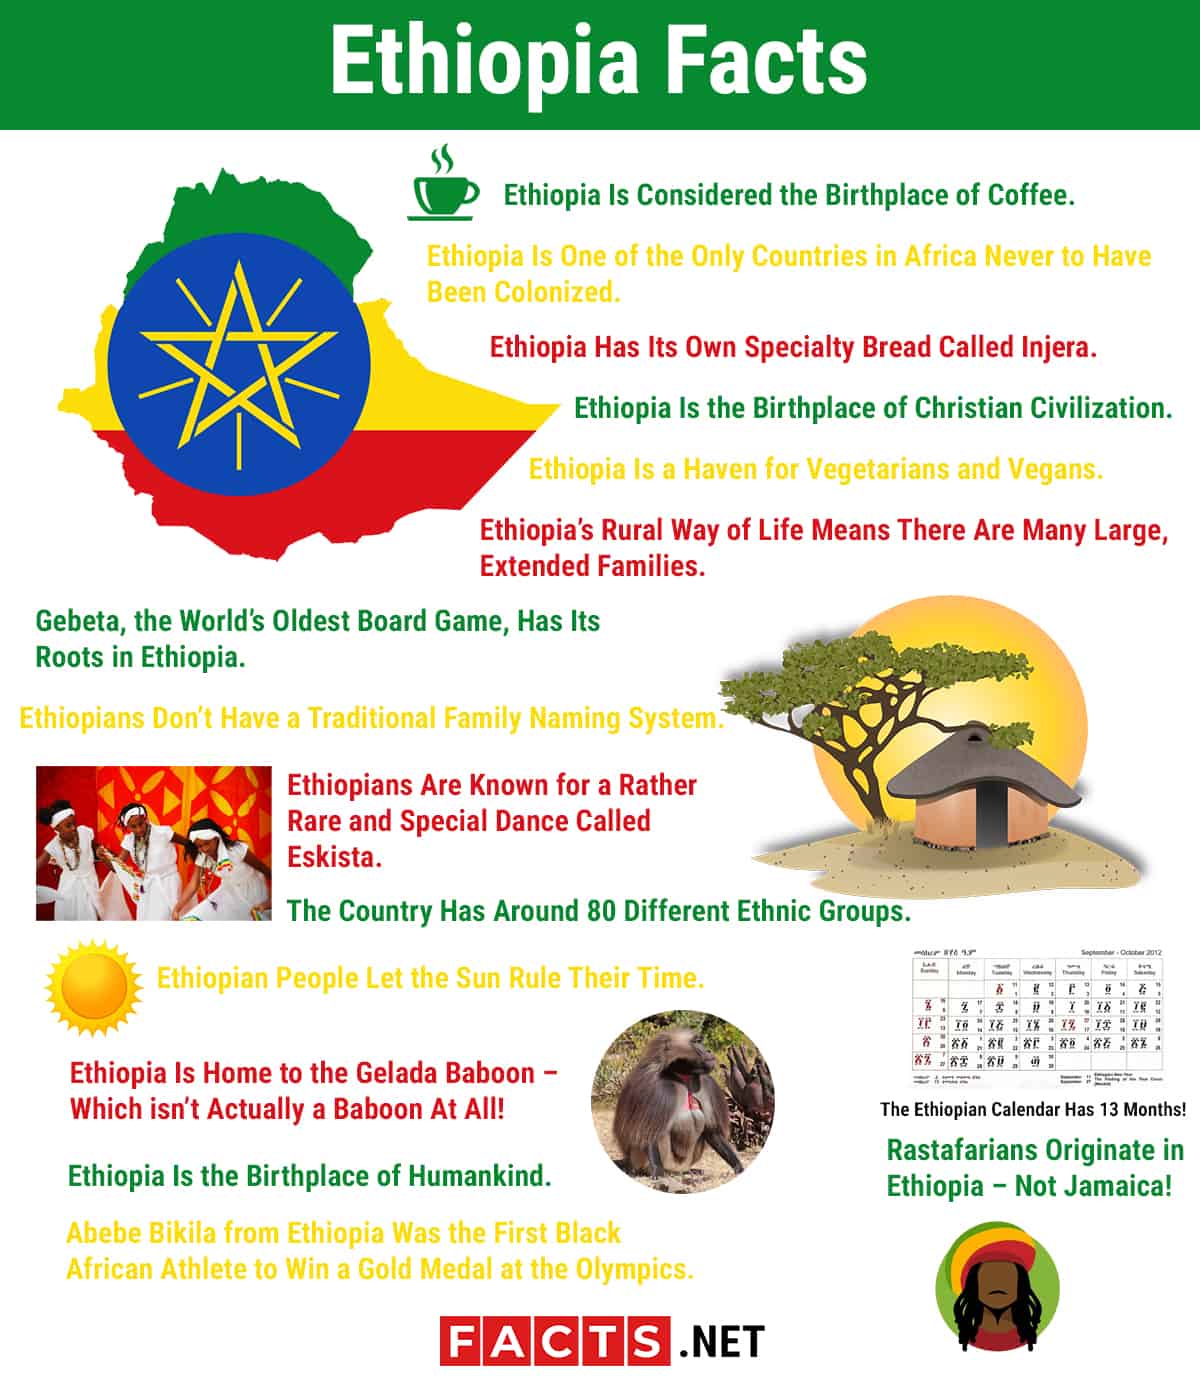 Văn hóa Ethiopia có nhiều nét đặc trưng riêng biệt và độc đáo. Hình ảnh sẽ giúp cho bạn hiểu rõ hơn về văn hóa của Ethiopia, từ nghệ thuật đến lối sống và tập quán.